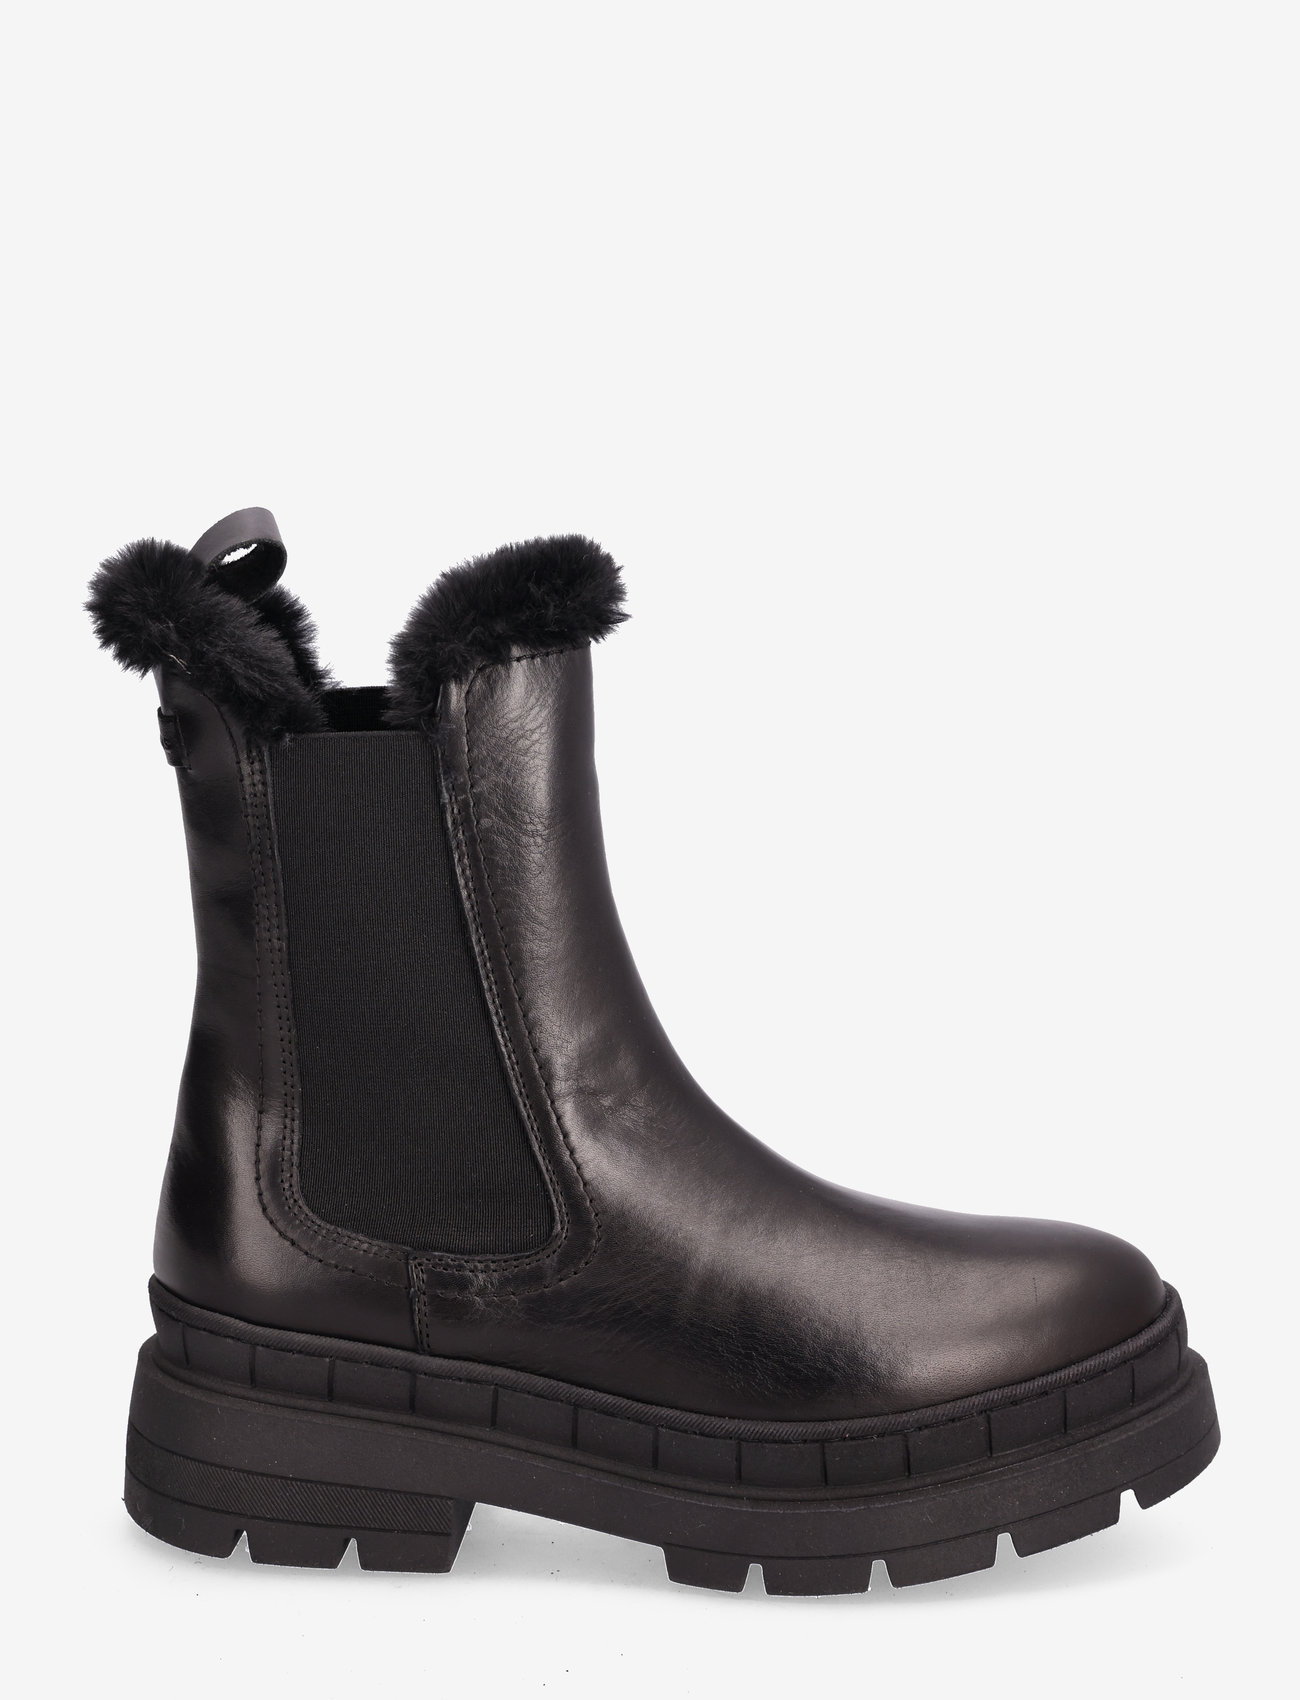 Tamaris - Women Boots - lygiapadžiai aulinukai iki kulkšnių - black leather - 1